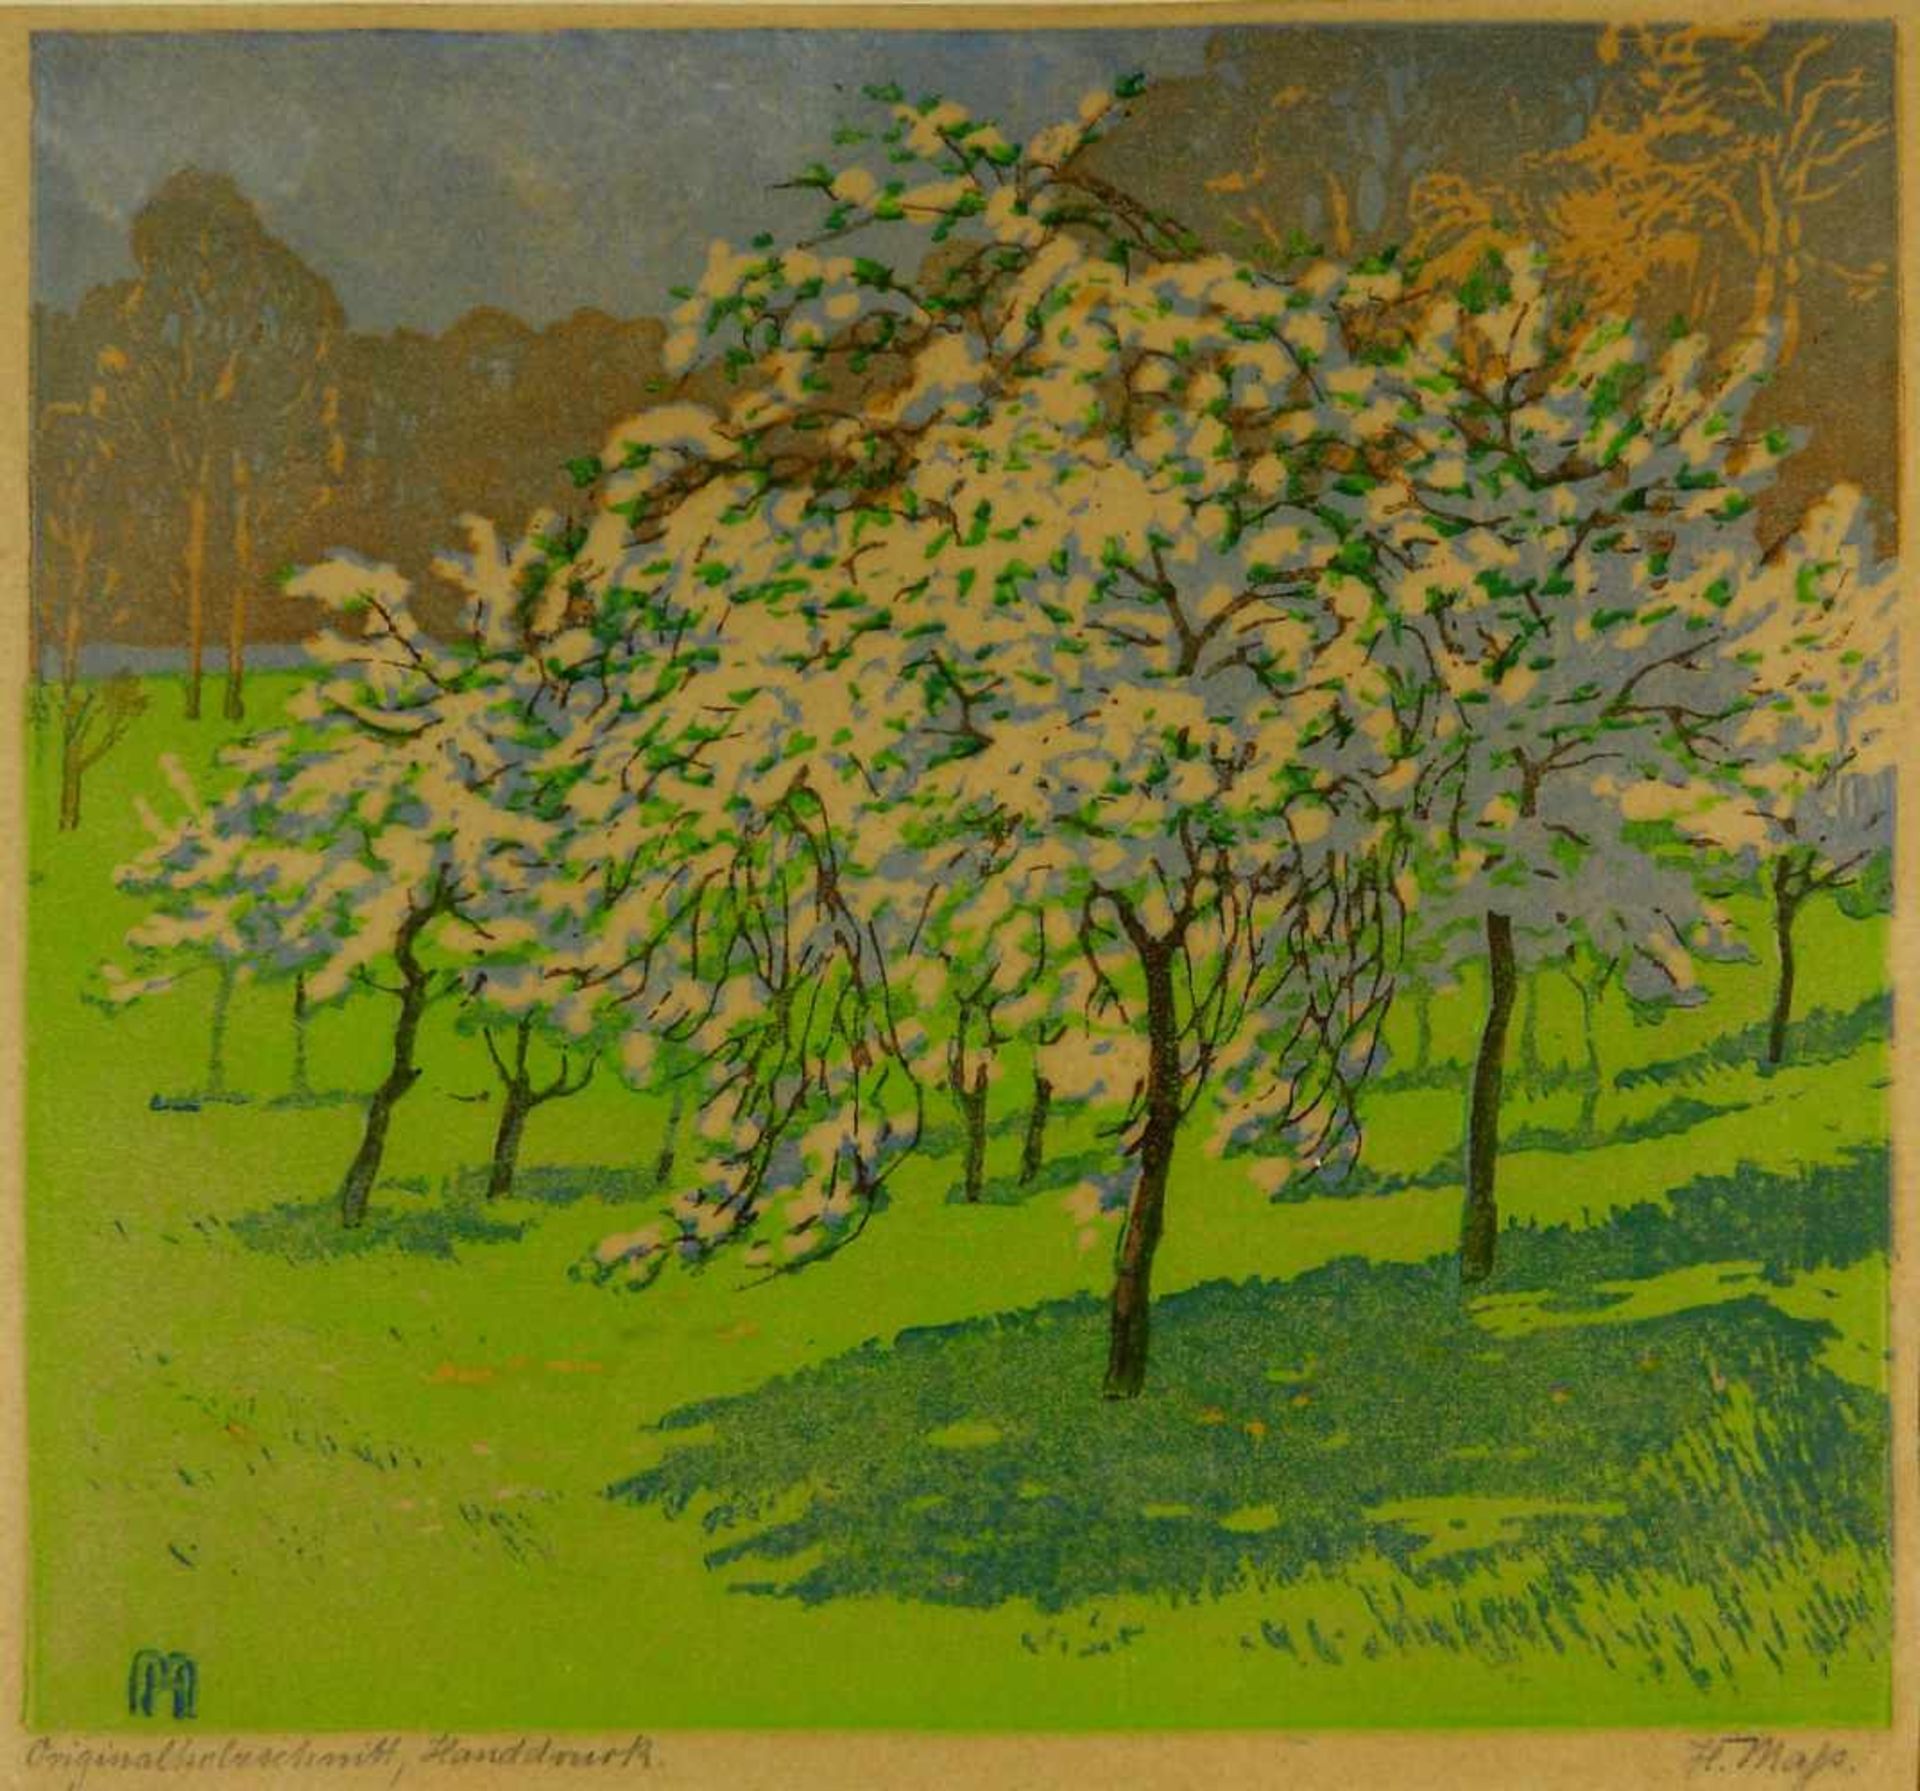 Maß, Helene (1871 Schönlanke - 1955 Berlin)Blühende Bäume auf einer Wiese. Farbholzschnitt. 31,2 x